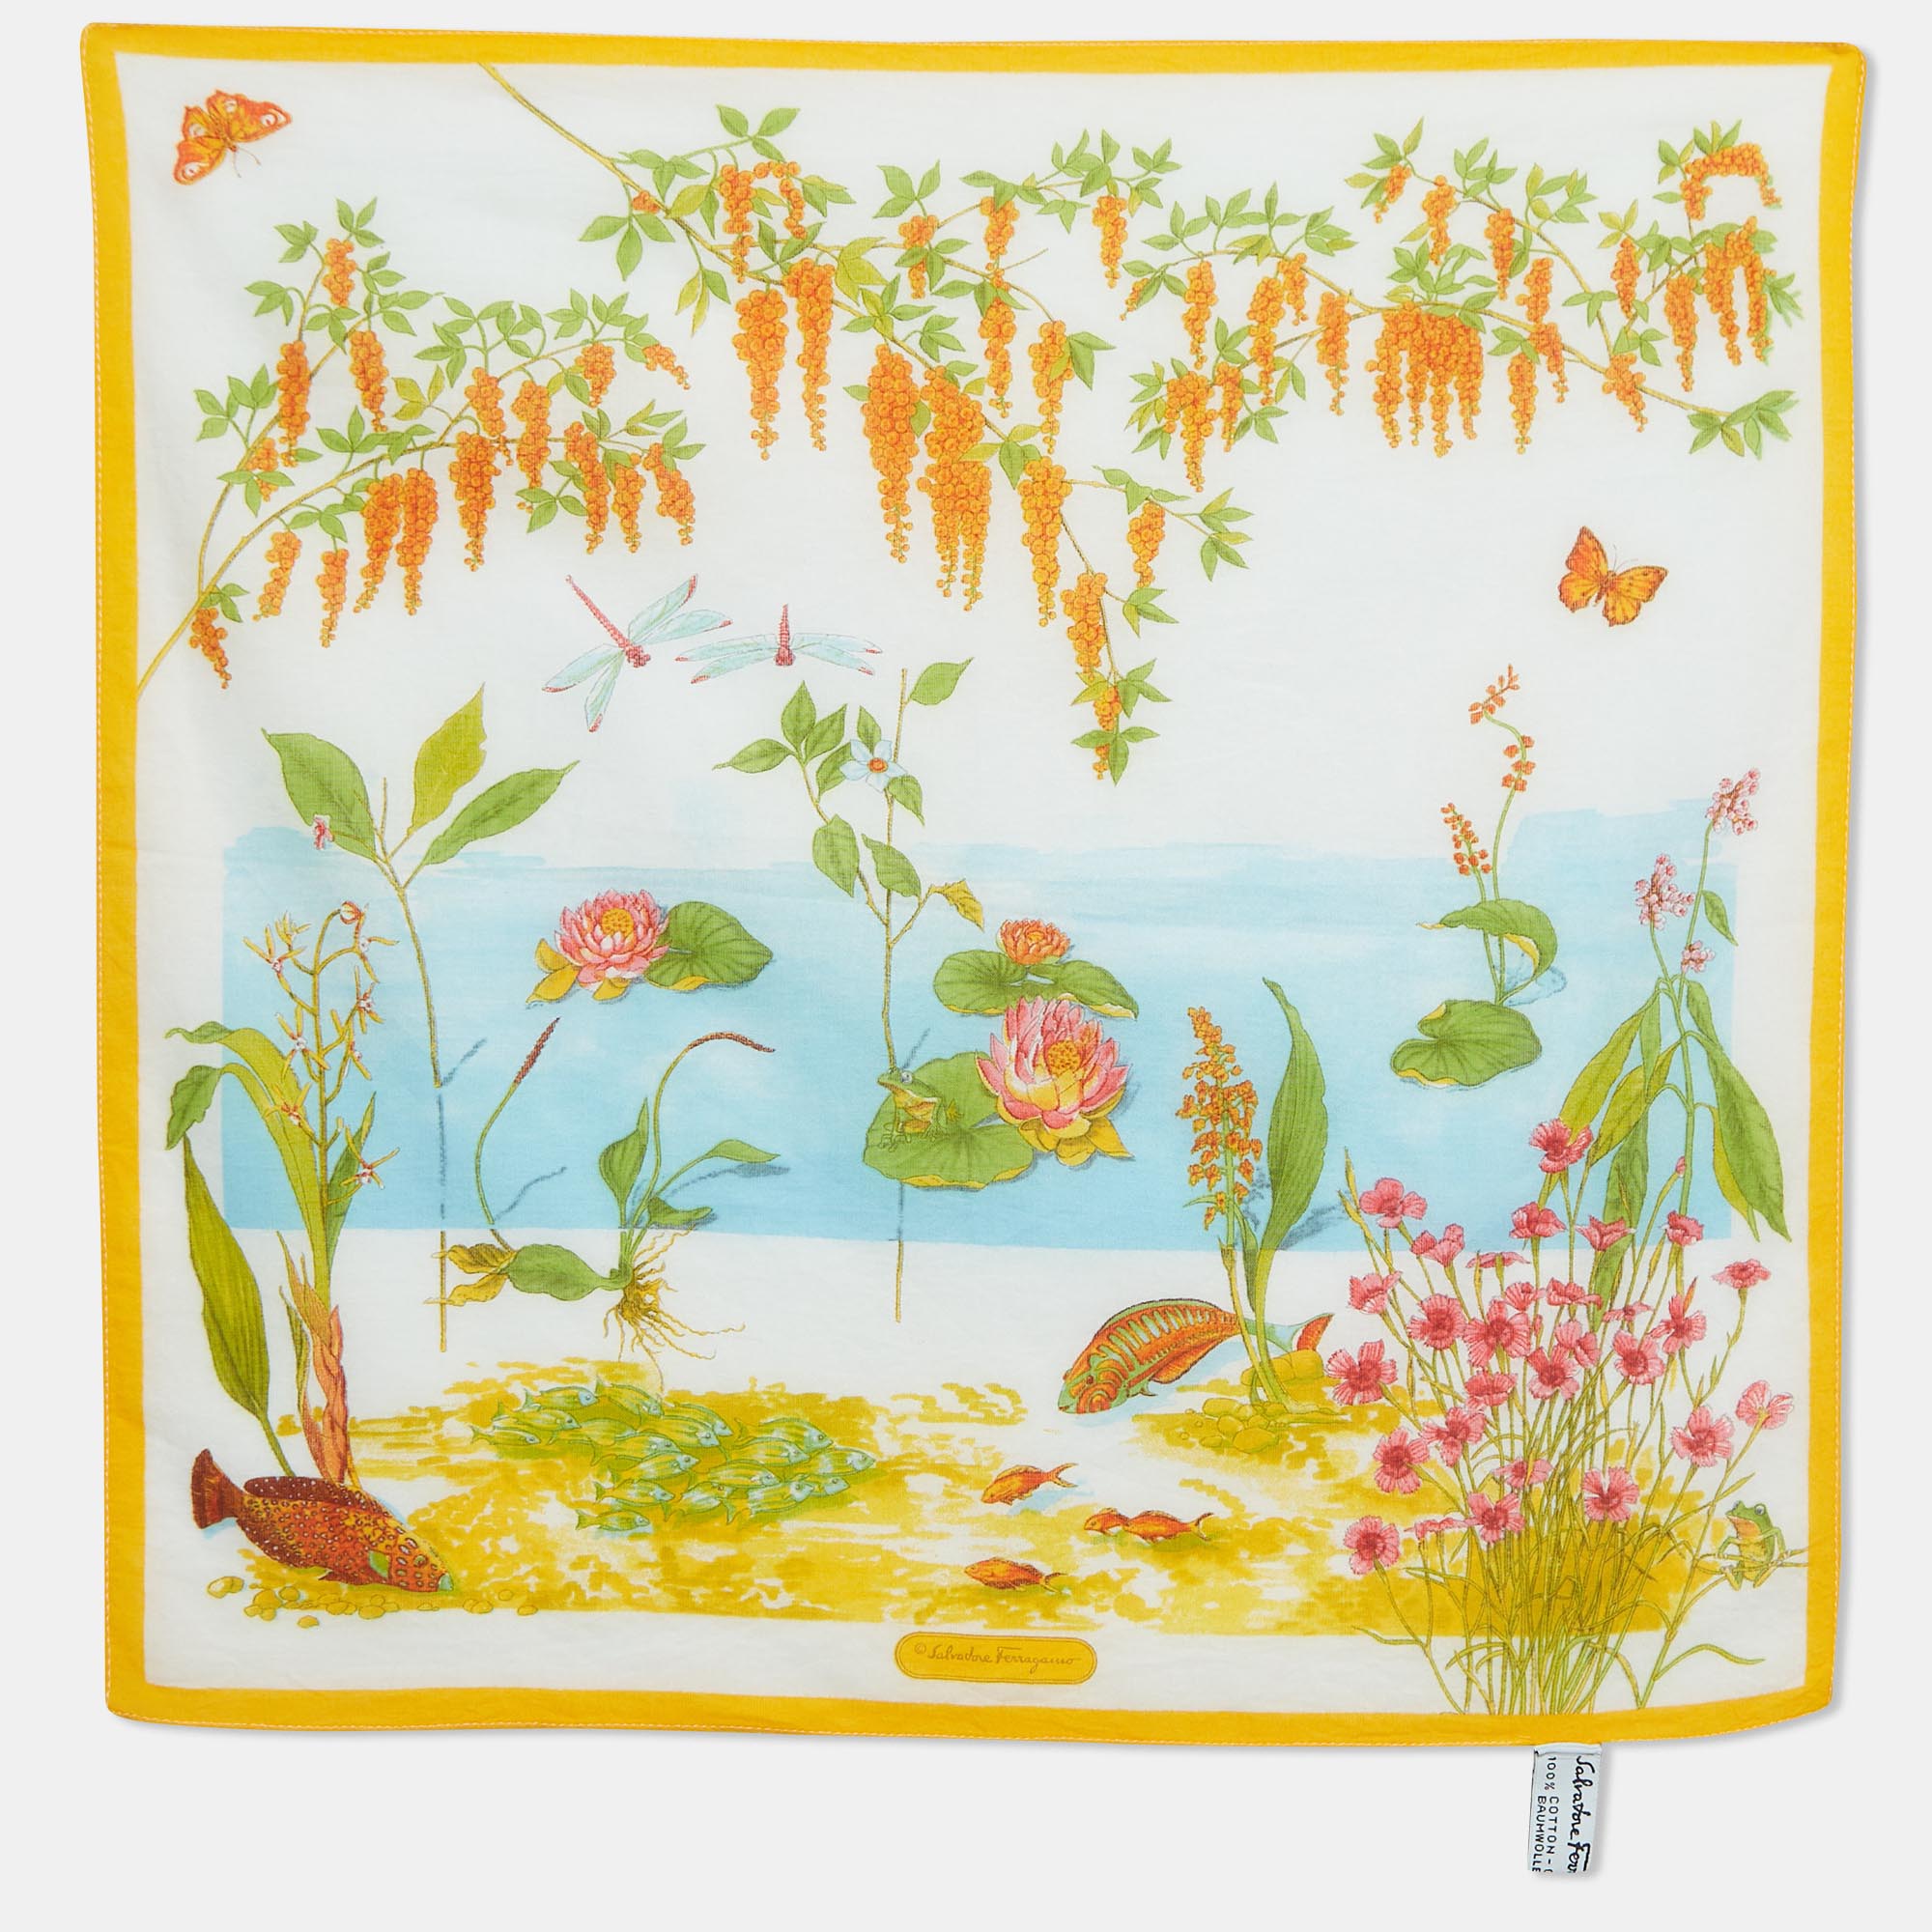 

Salvatore Ferragamo Multicolor Printed Handkerchief